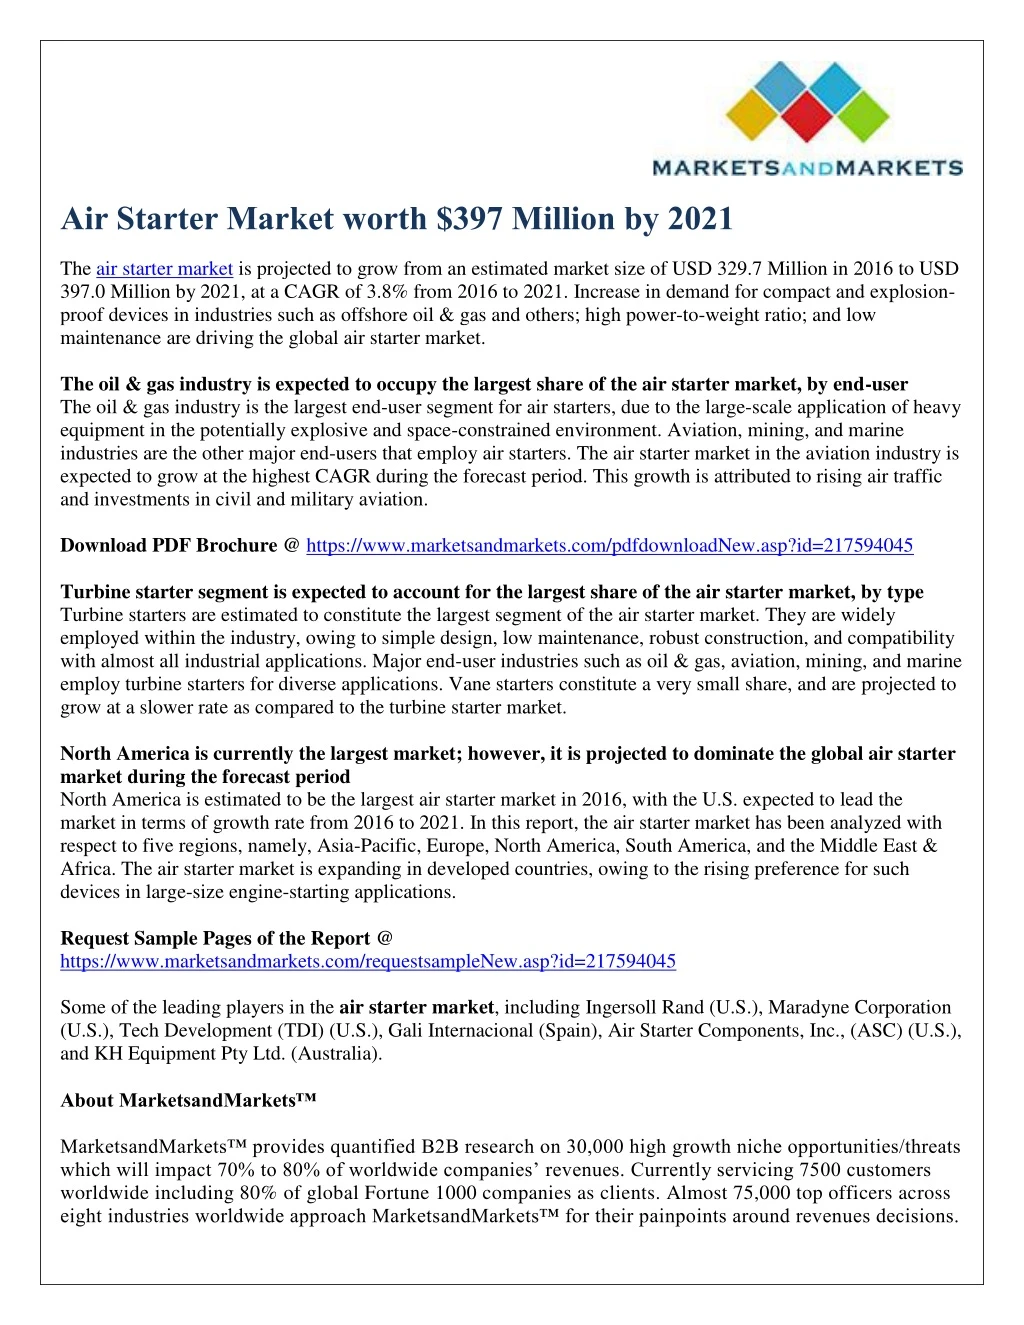 air starter market worth 397 million by 2021